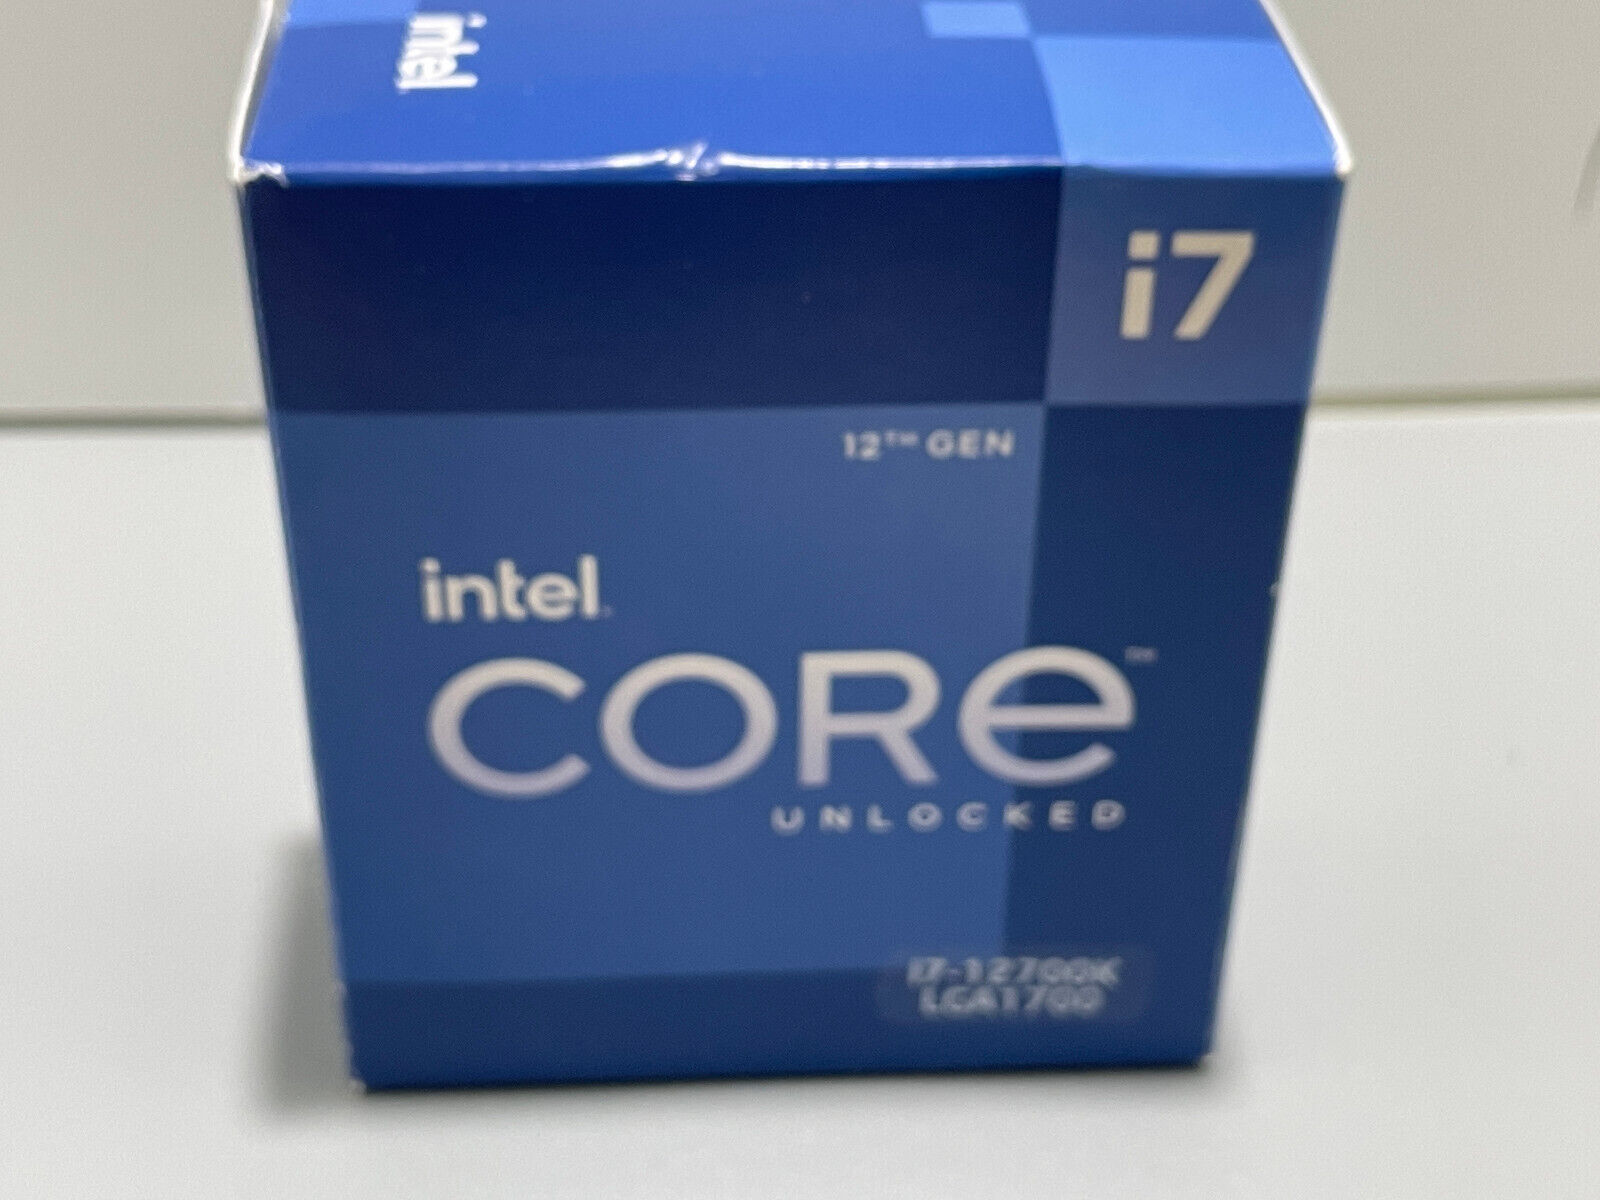 Intel Core i7-12700K Processor (5 GHz, 12 Cores, FCLGA1700) Box